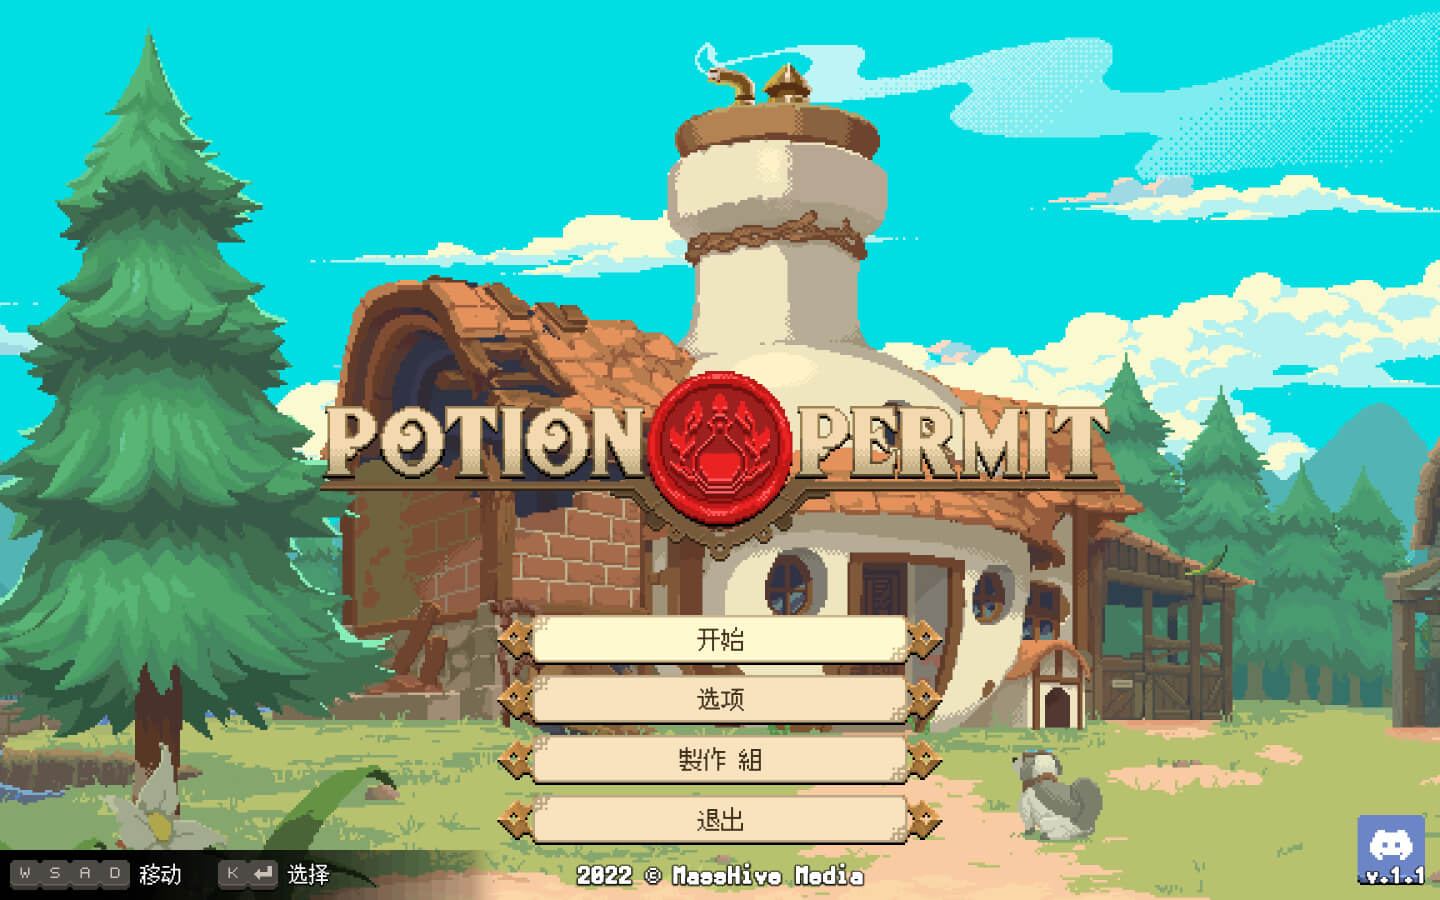 杏林物语豪华版 for Mac Potion Permit: Deluxe Edition v1.3.2 中文原生版 苹果电脑